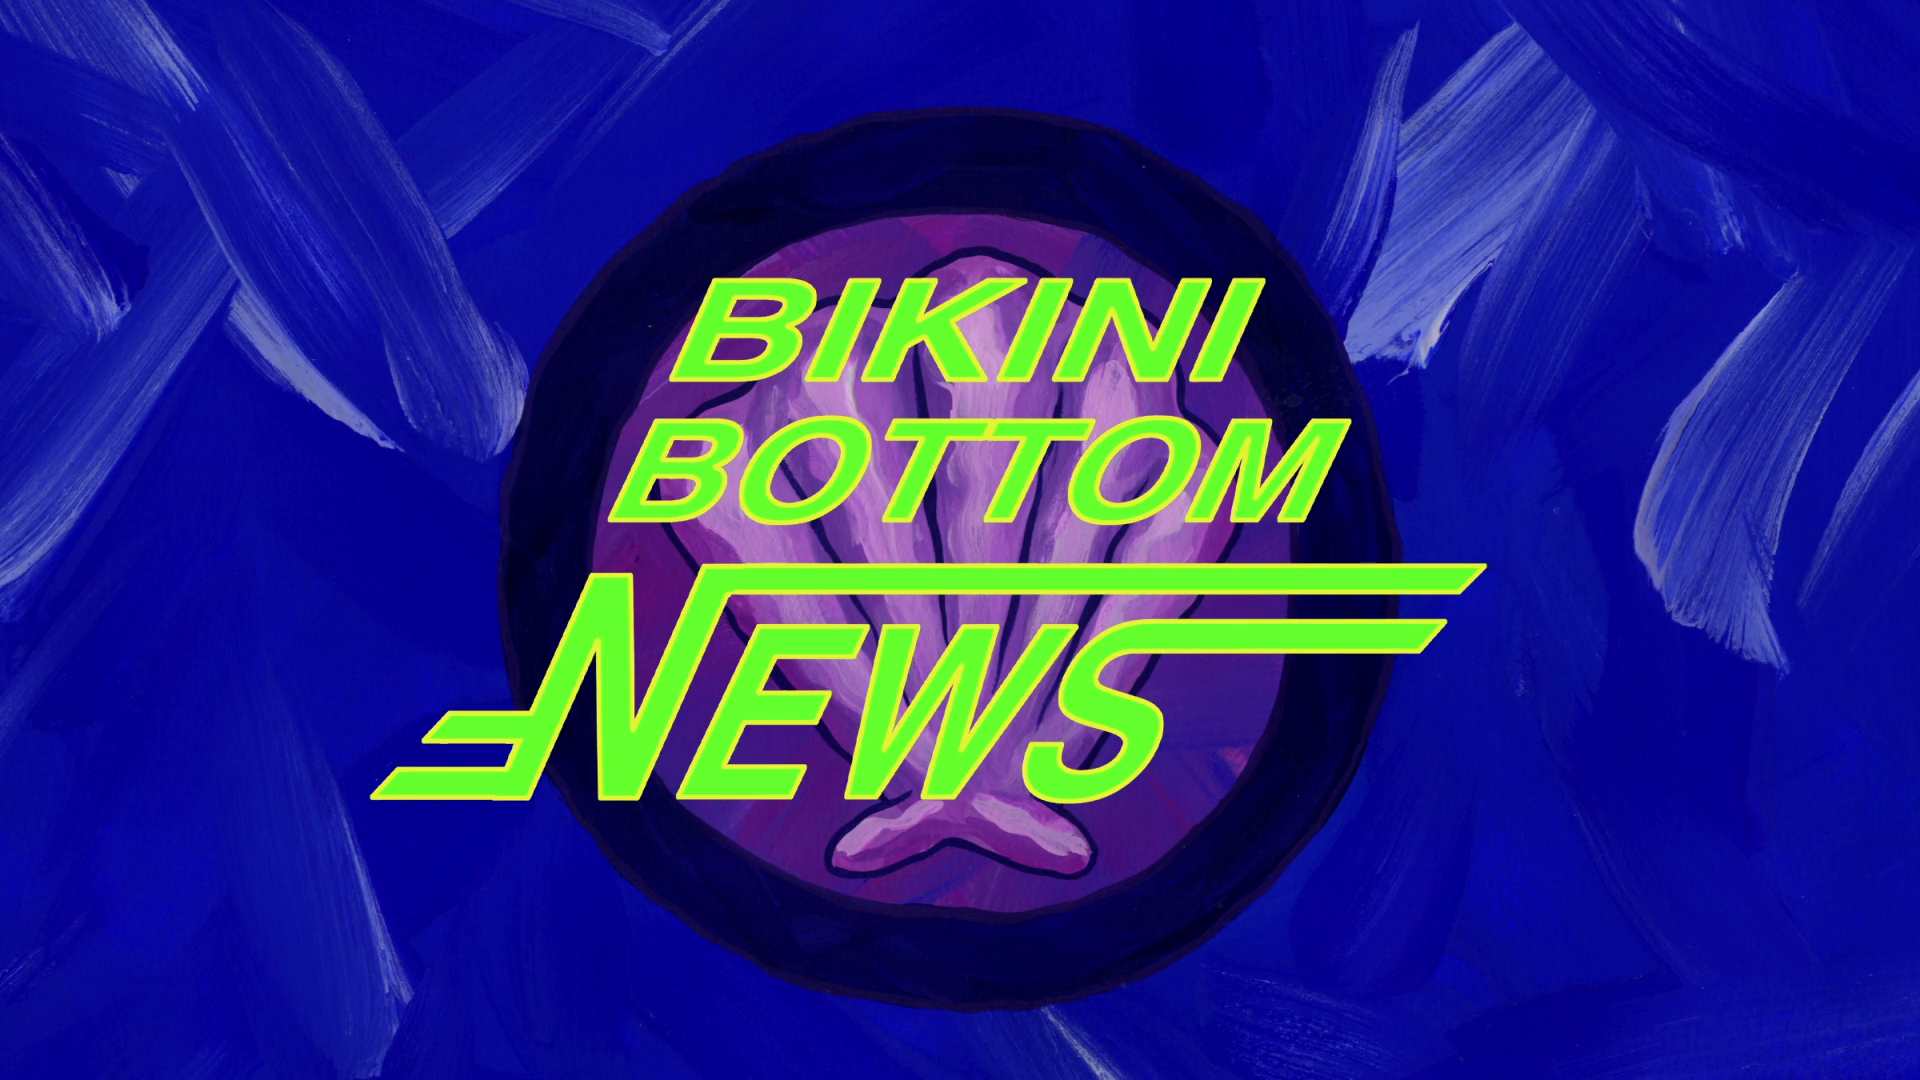 Bikini Bottom News, Encyclopedia SpongeBobia